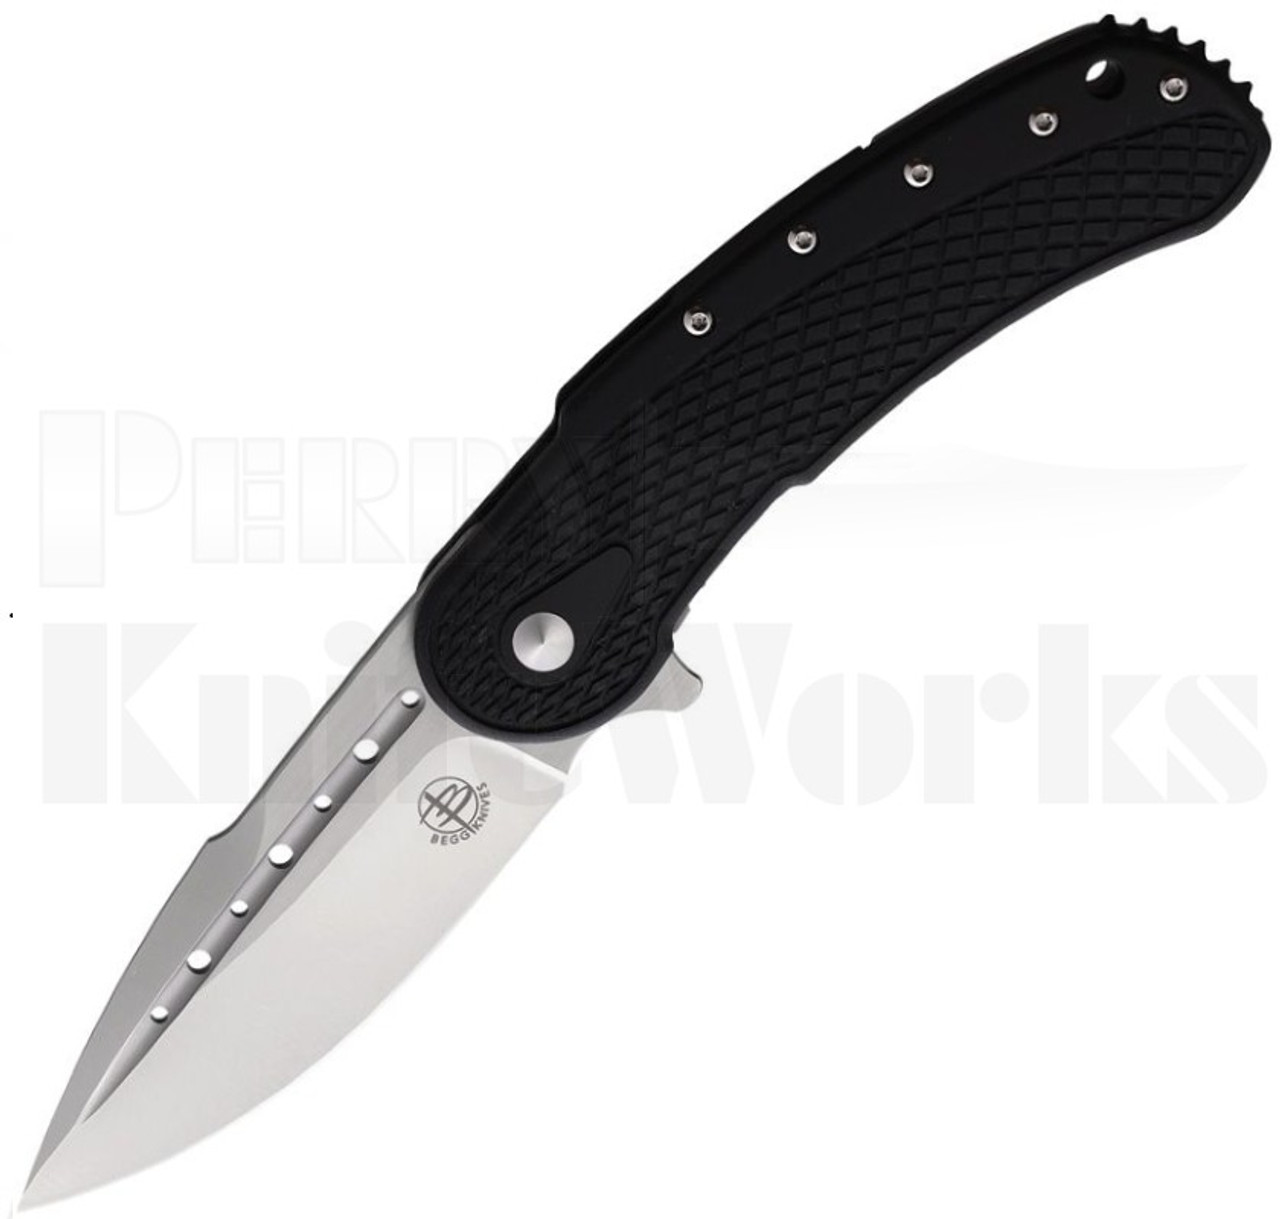 Begg Knives Steelcraft Series Bodega Knife Black l For Sale